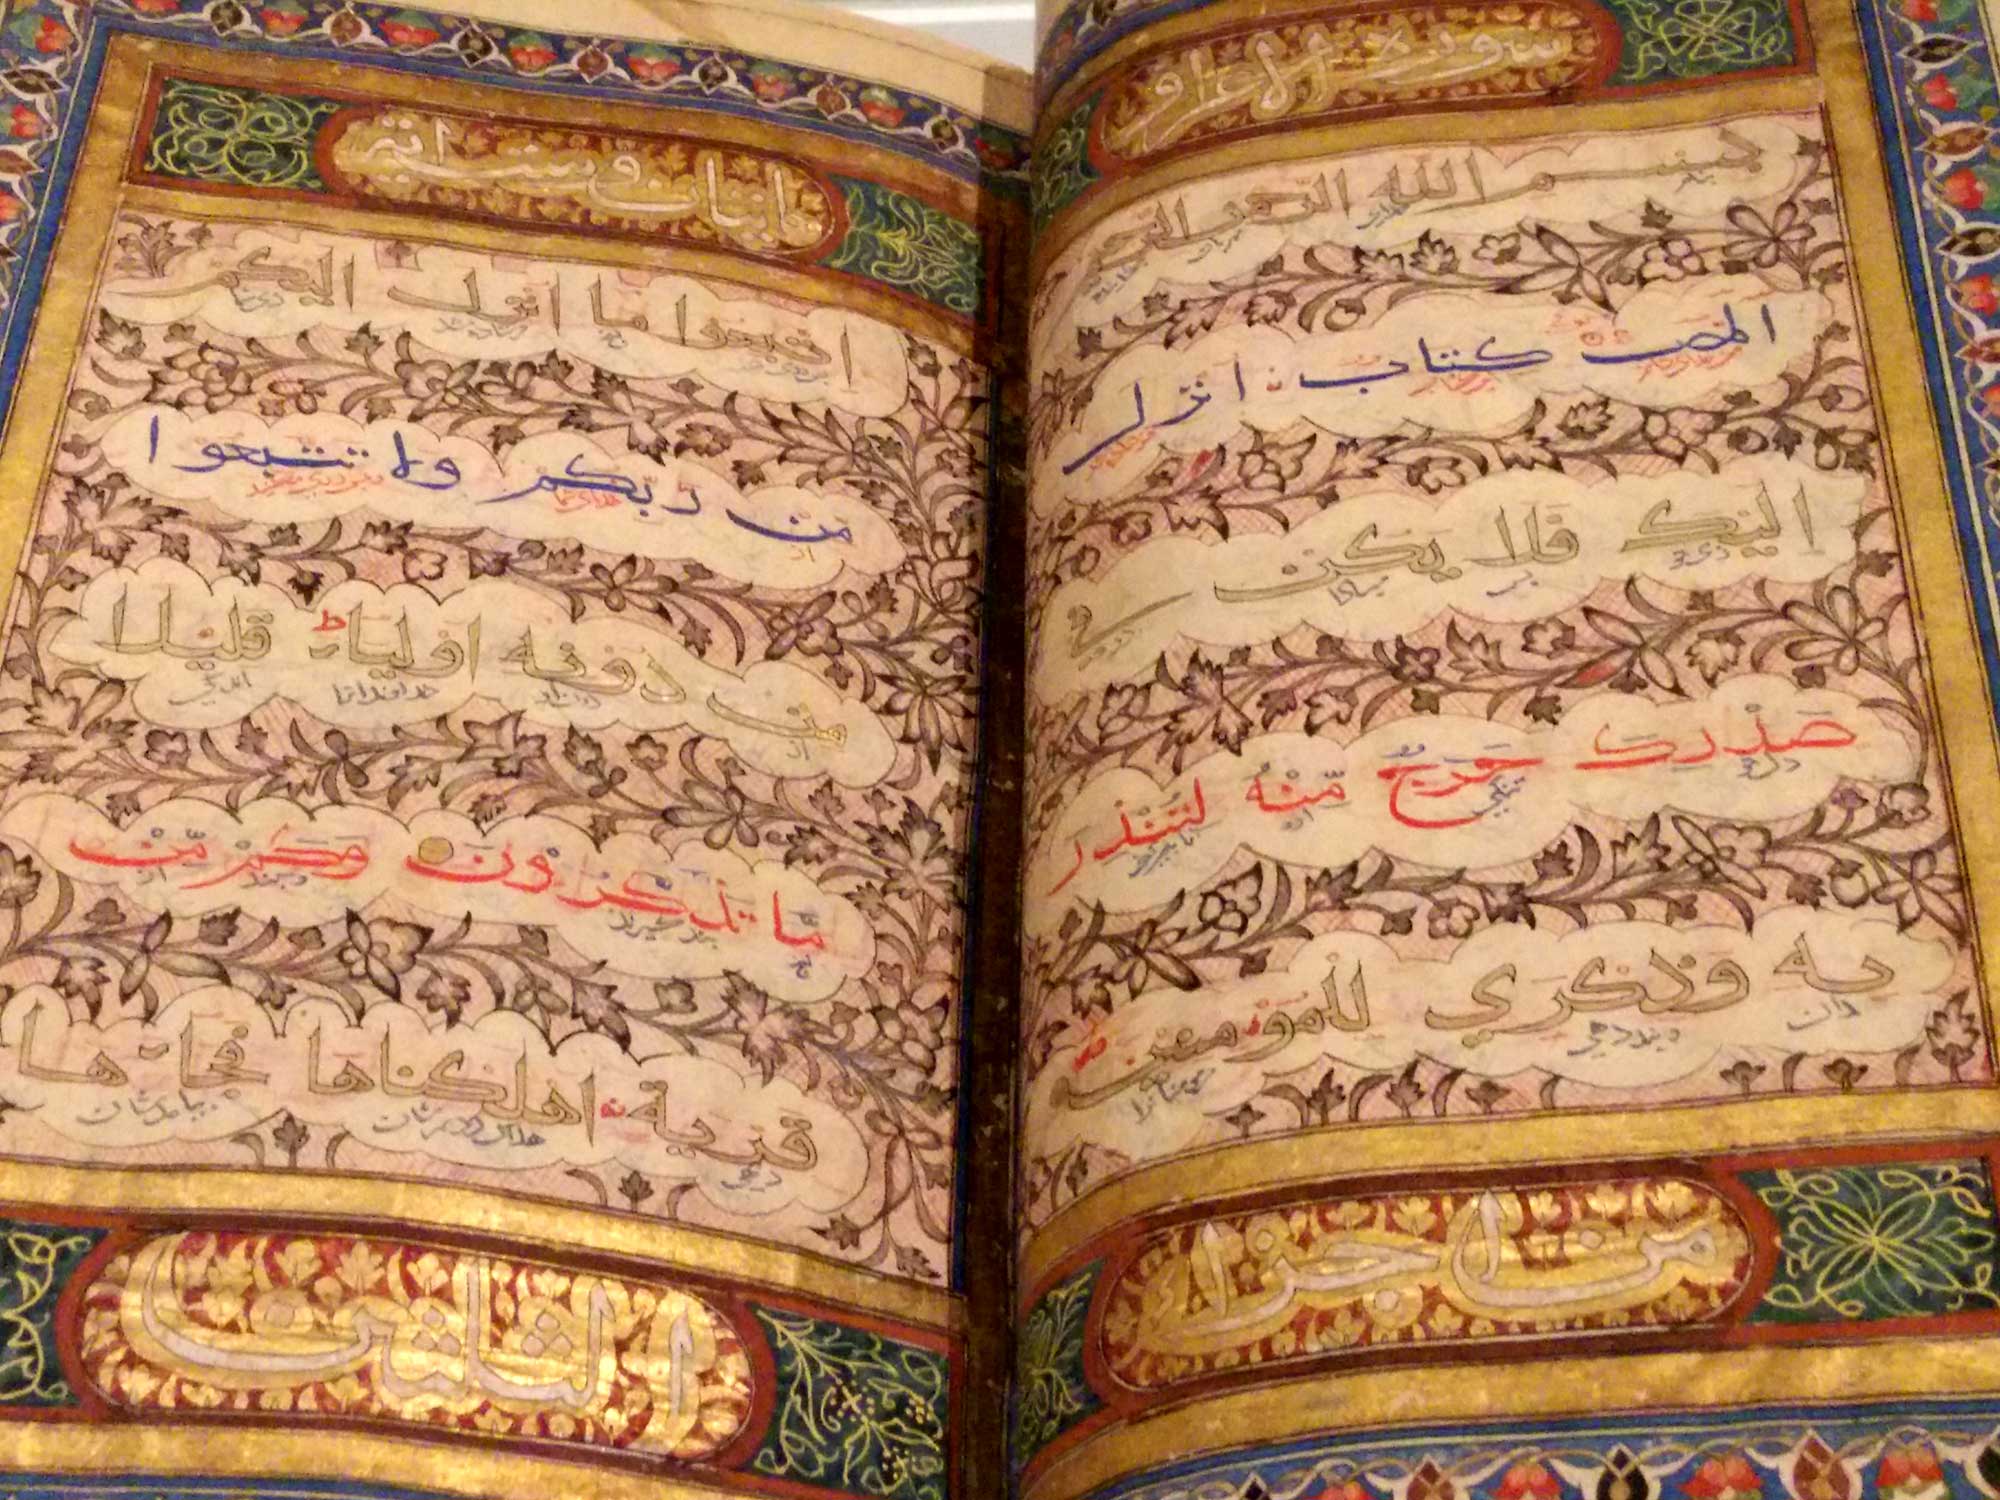 Muslim Book